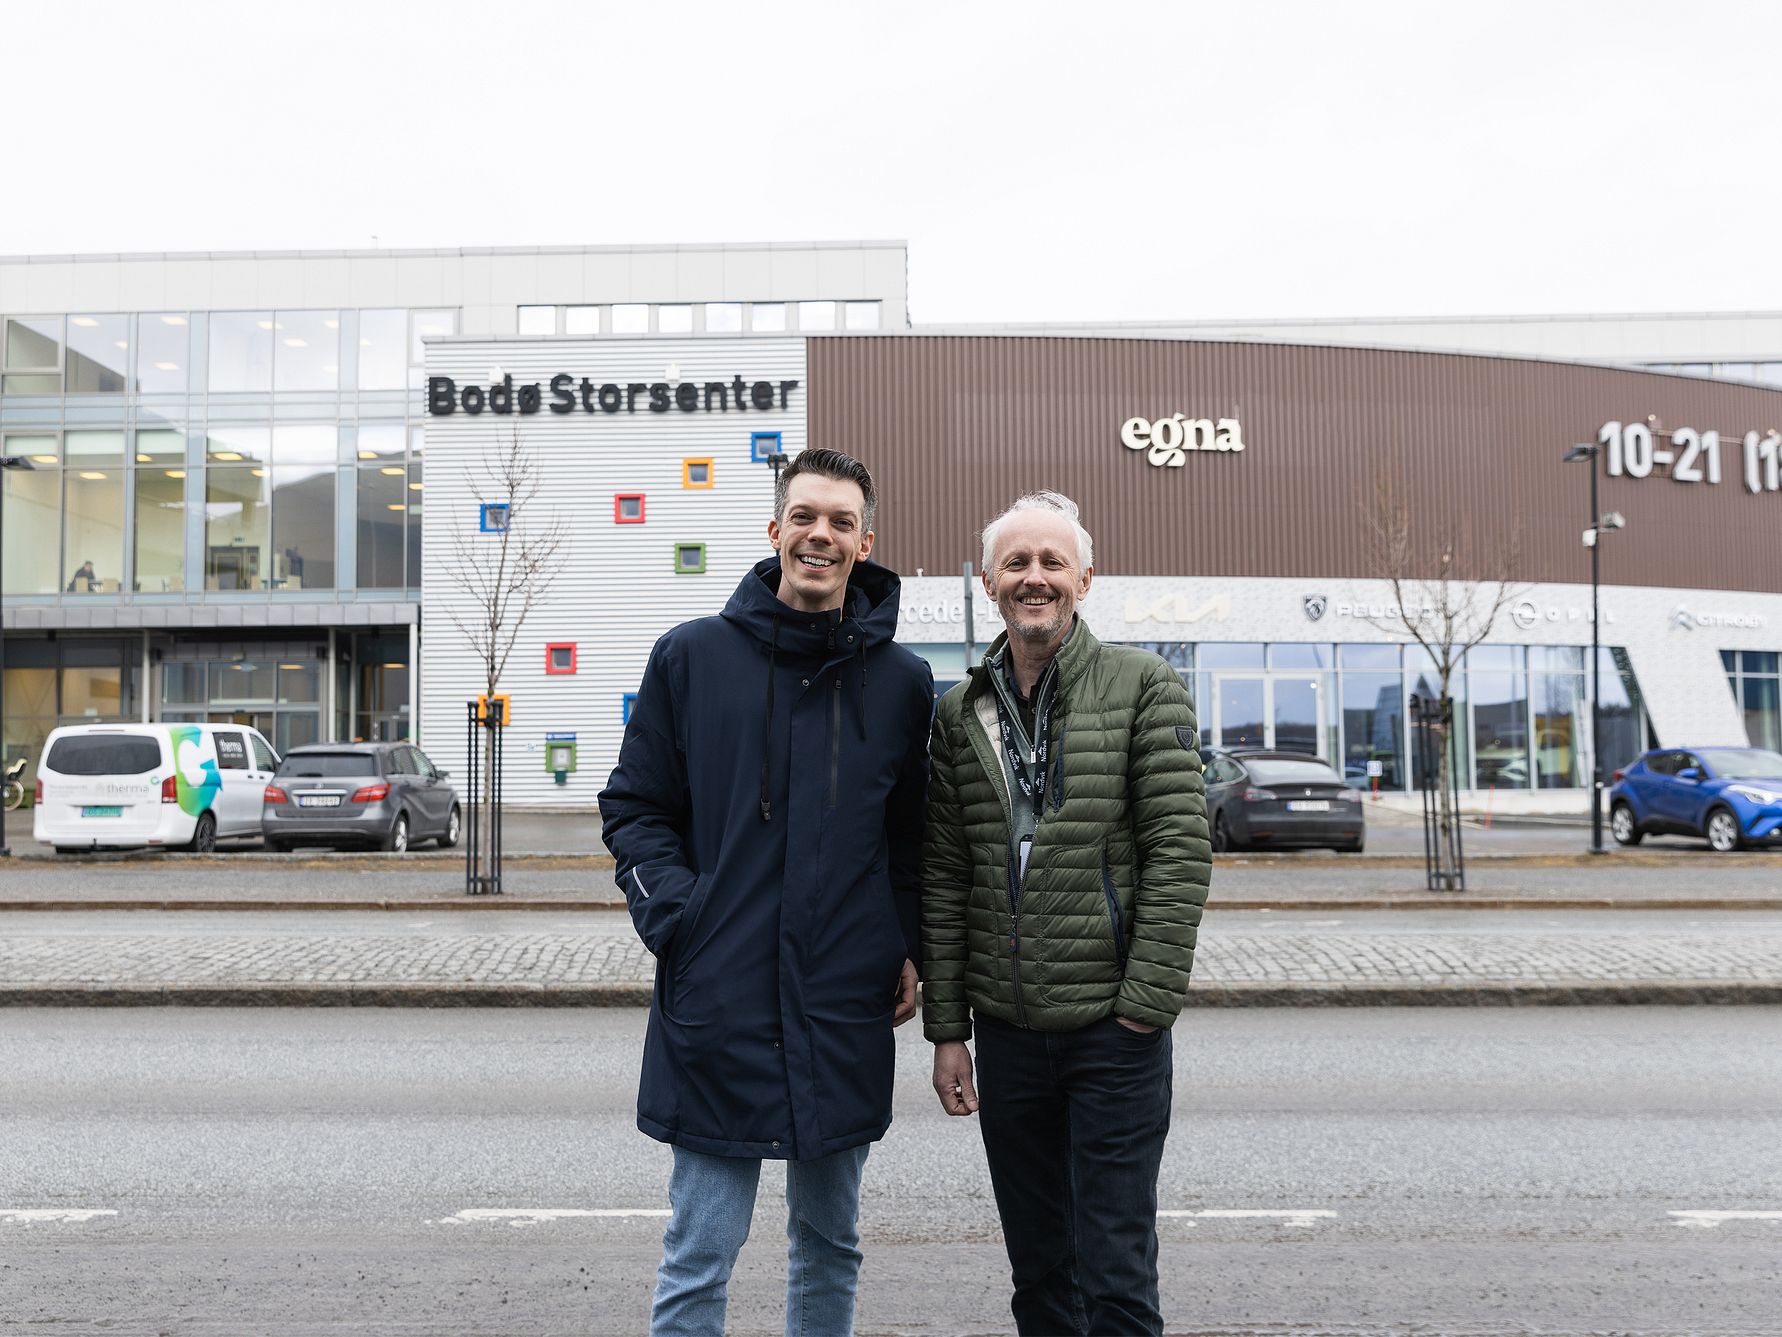 Treningskjeden fortsetter storsatsningen i Bodø – og åpner nå sin hittil største satsning i Bodø Storsenter